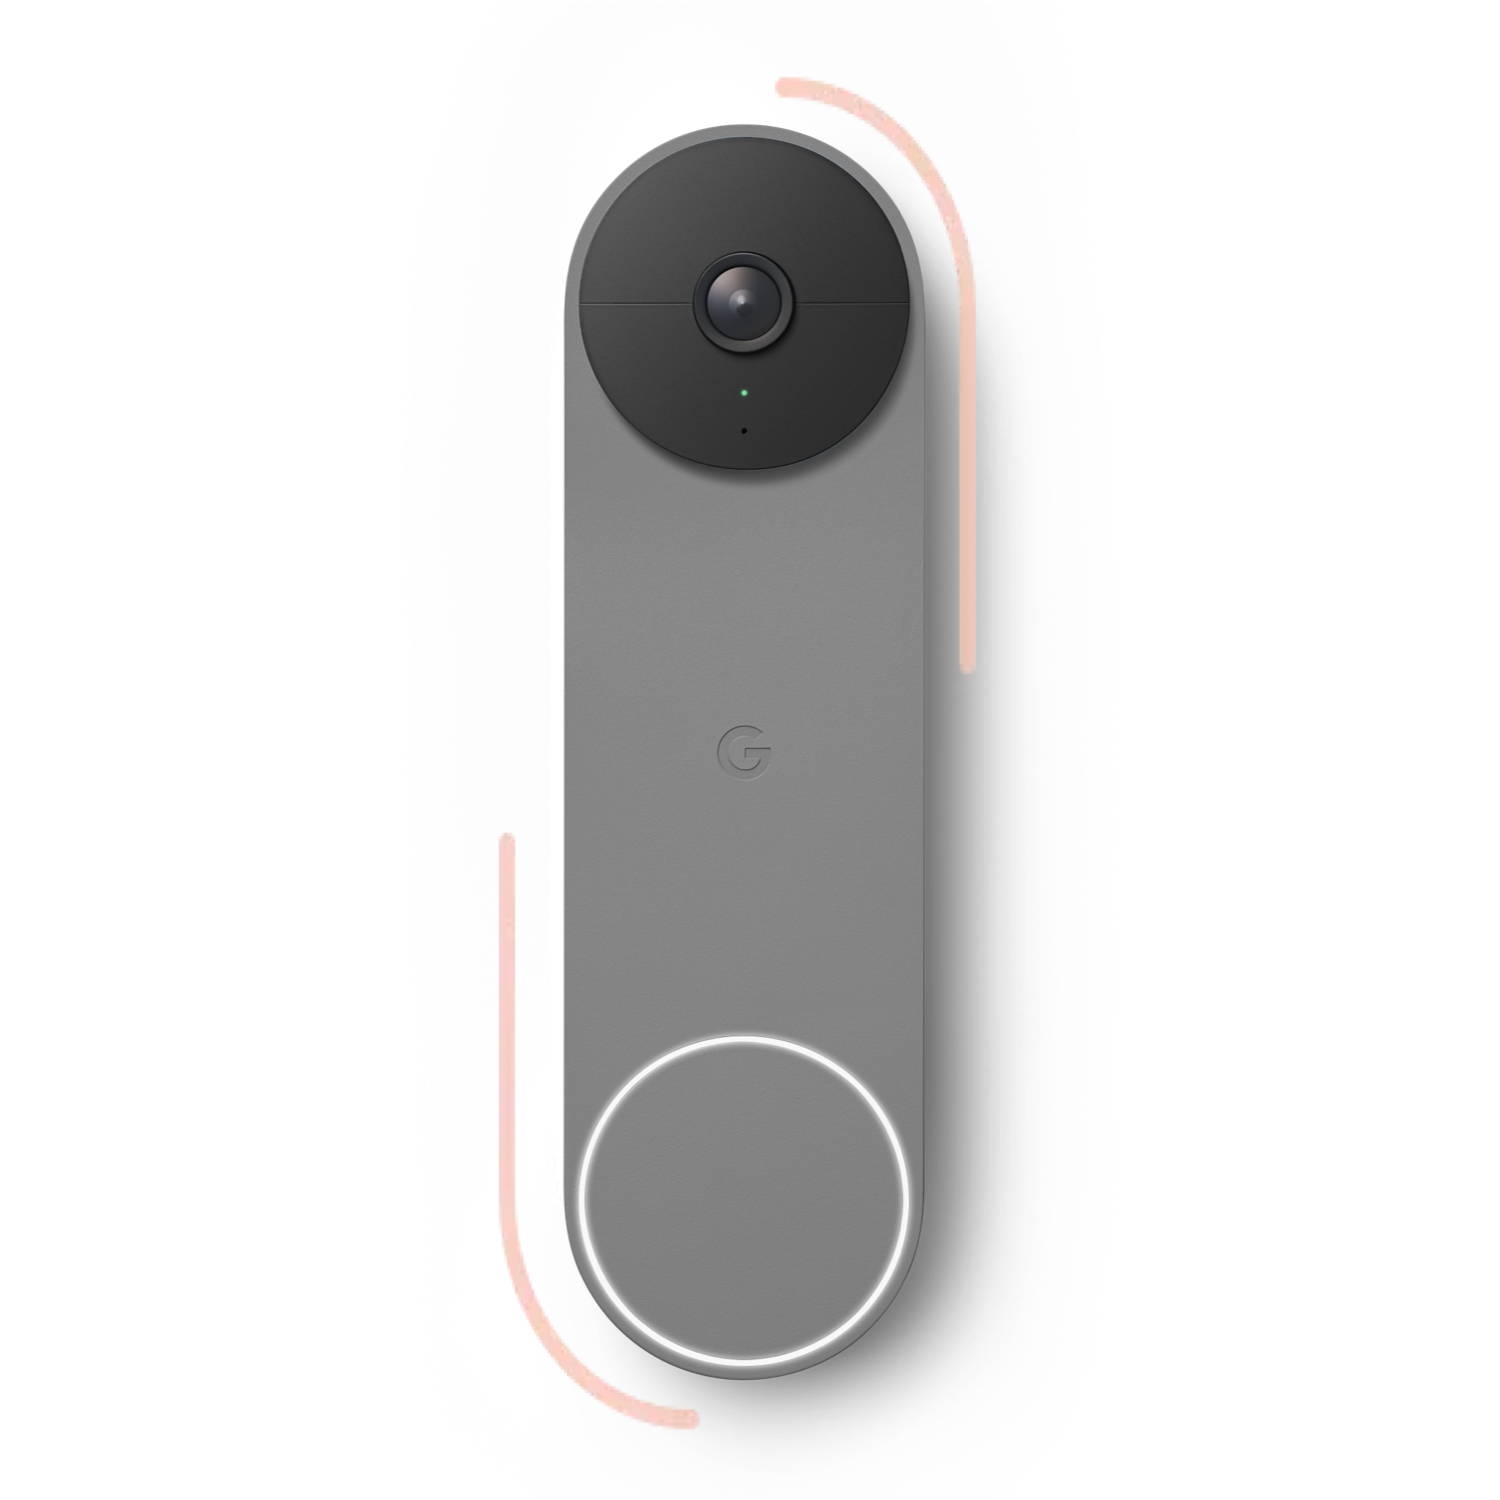 Google Nest video doorbell